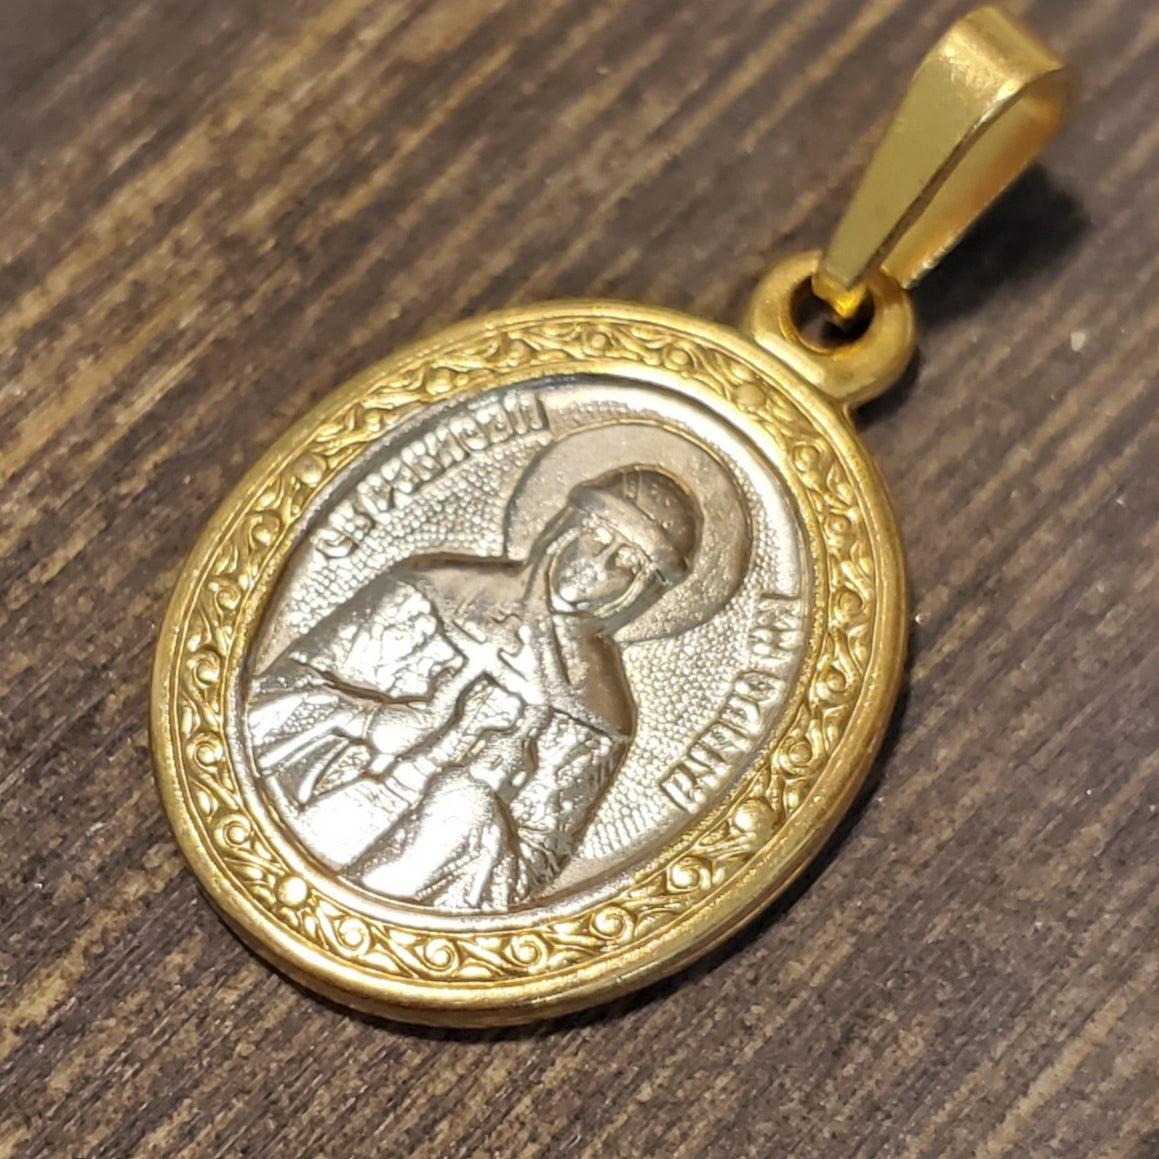 Pendentif collier icône Sainte Olga. Сharm chrétien